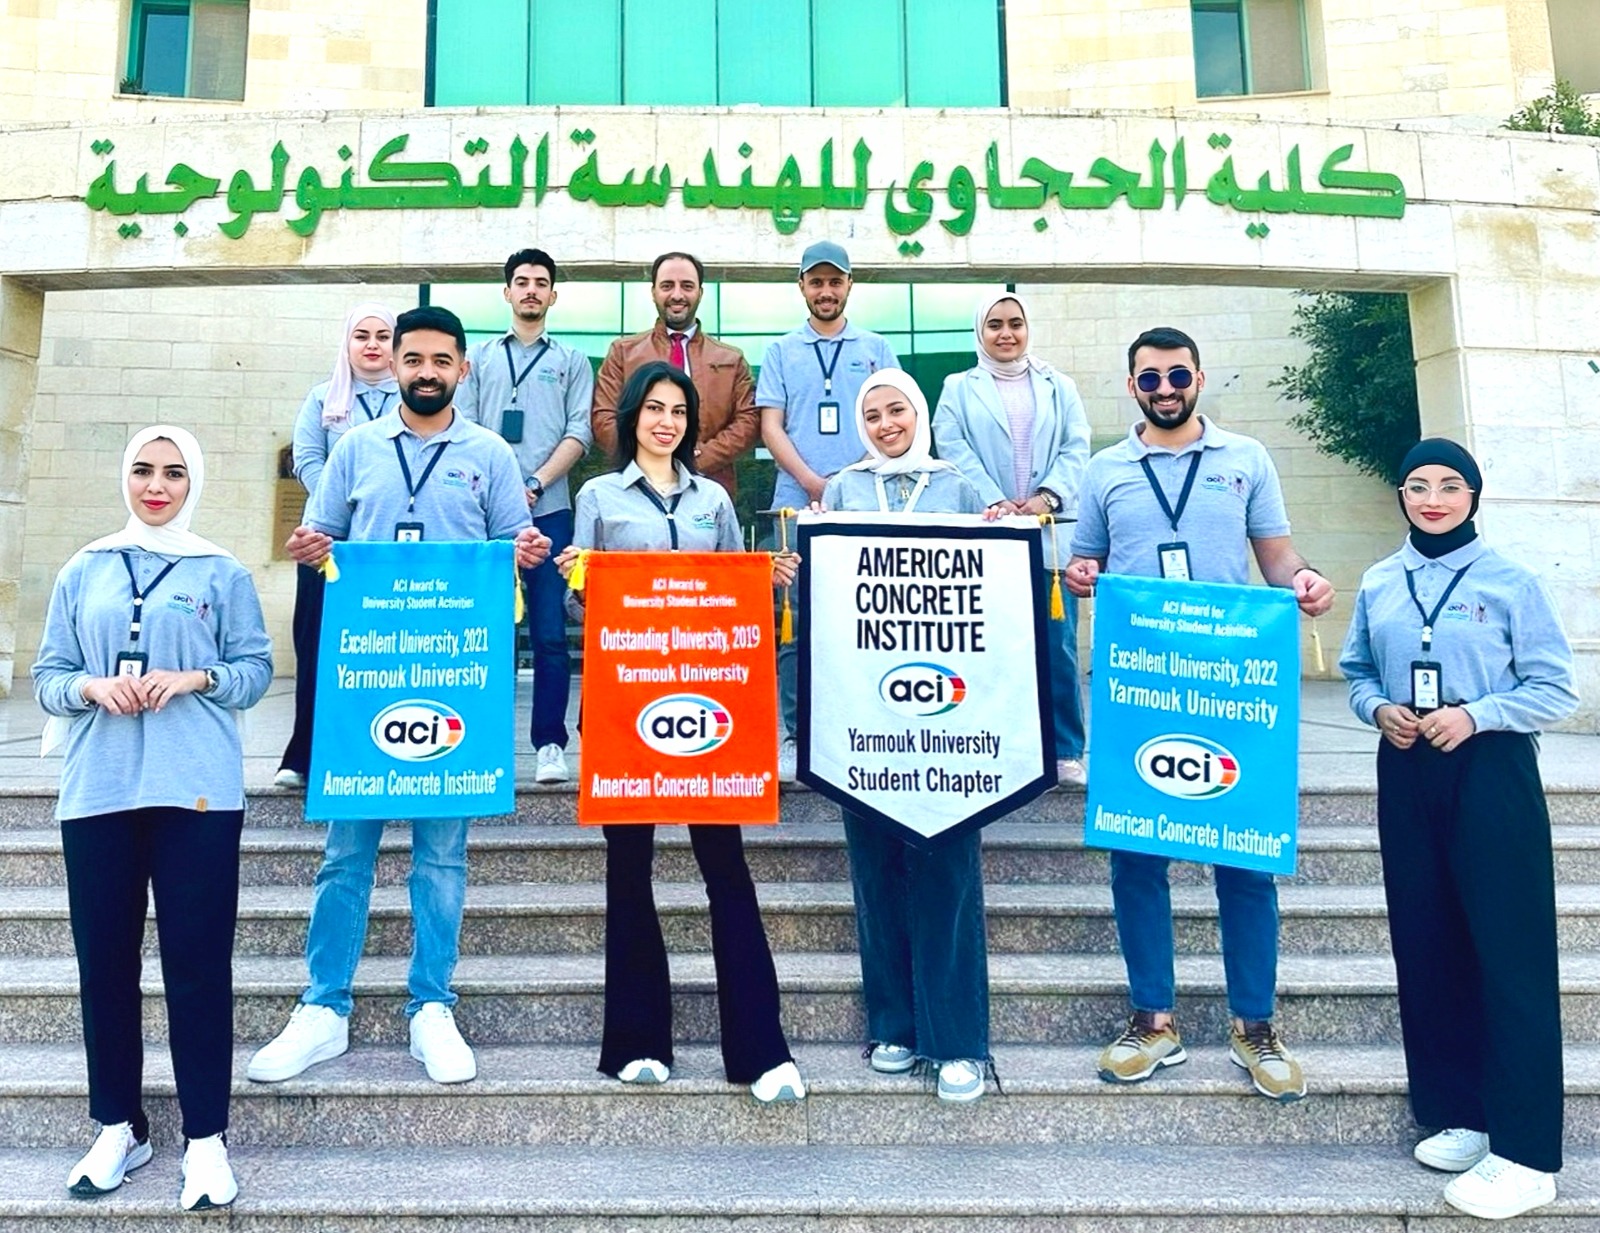 للسنة الثالثة على التوالي / الفرع الطلابي لمعهد الخرسانة الأمريكي في "حجاوي اليرموك" يفوز بجائزة الفرع المتميز